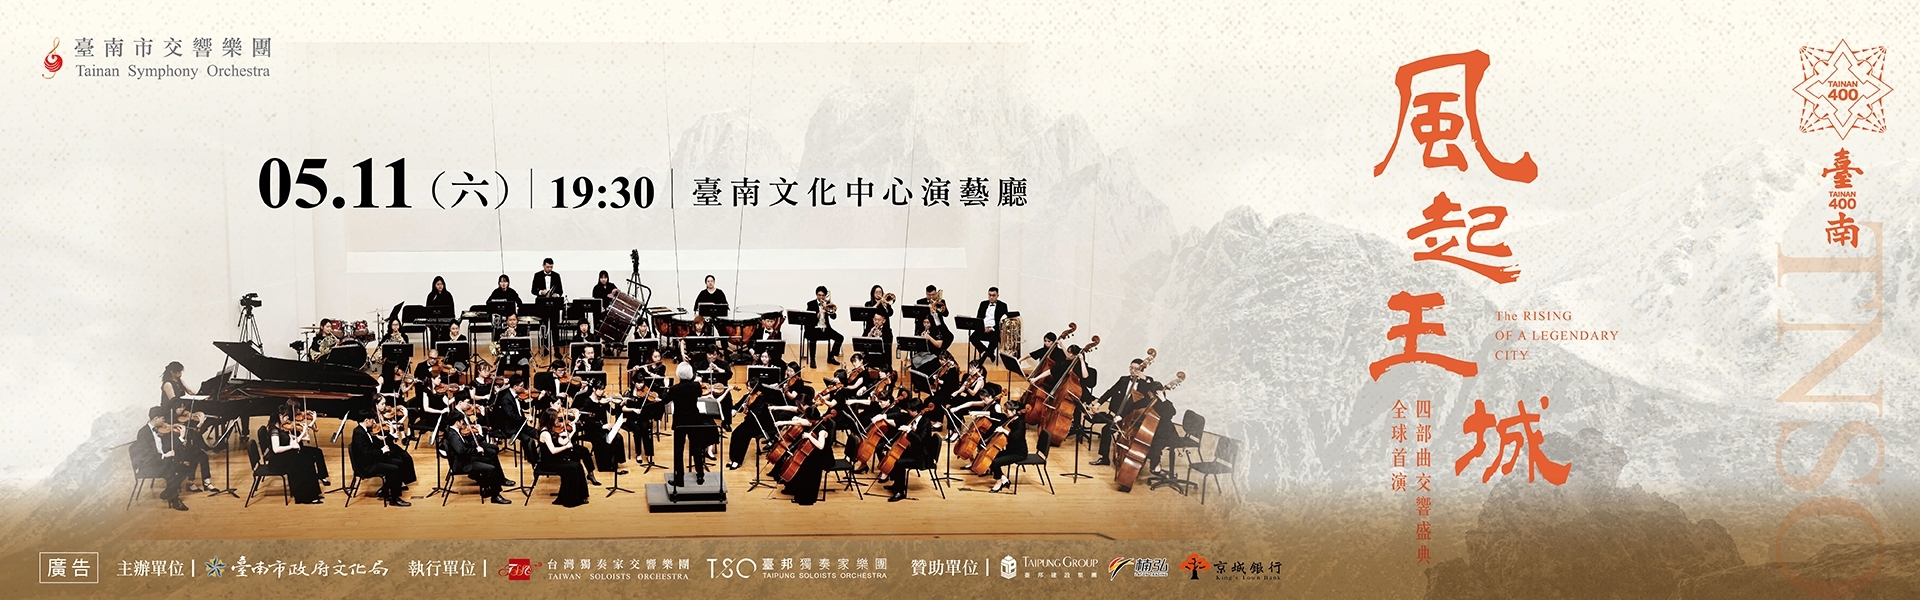 臺南市交響樂團《風起王城》